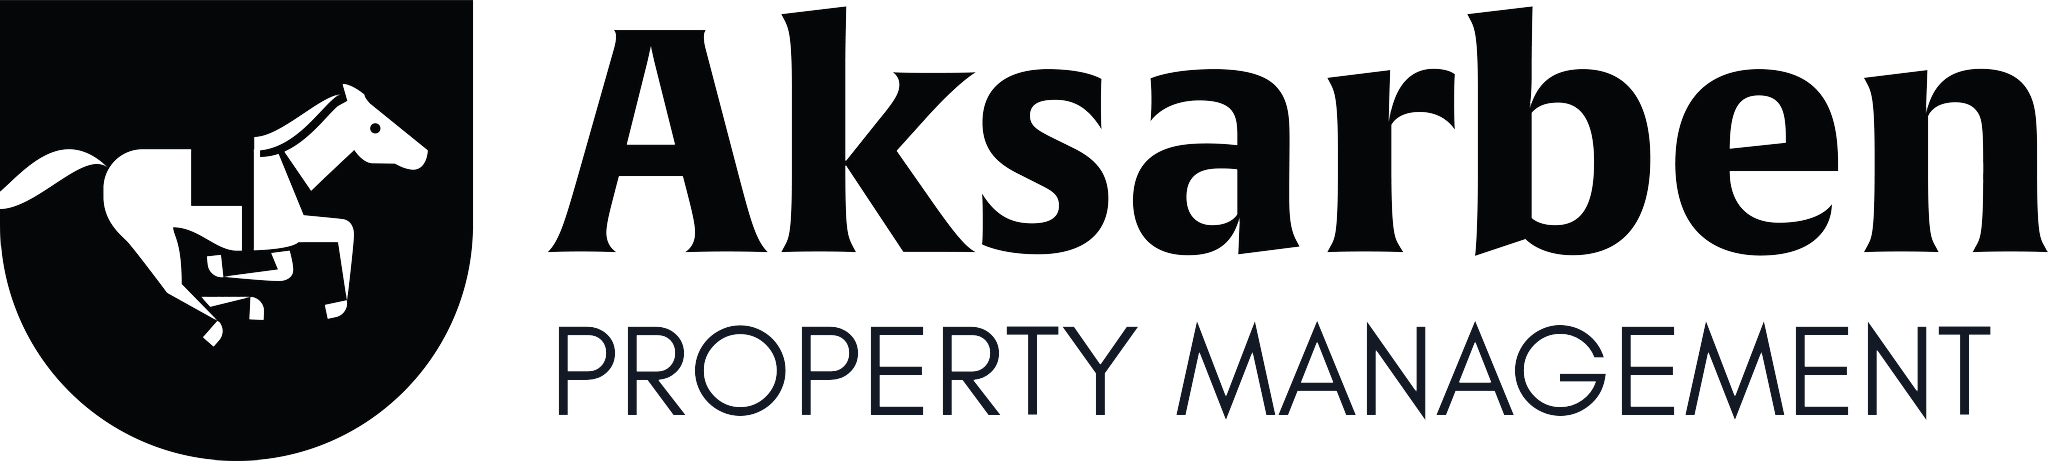 Aksarben Property Management Logo